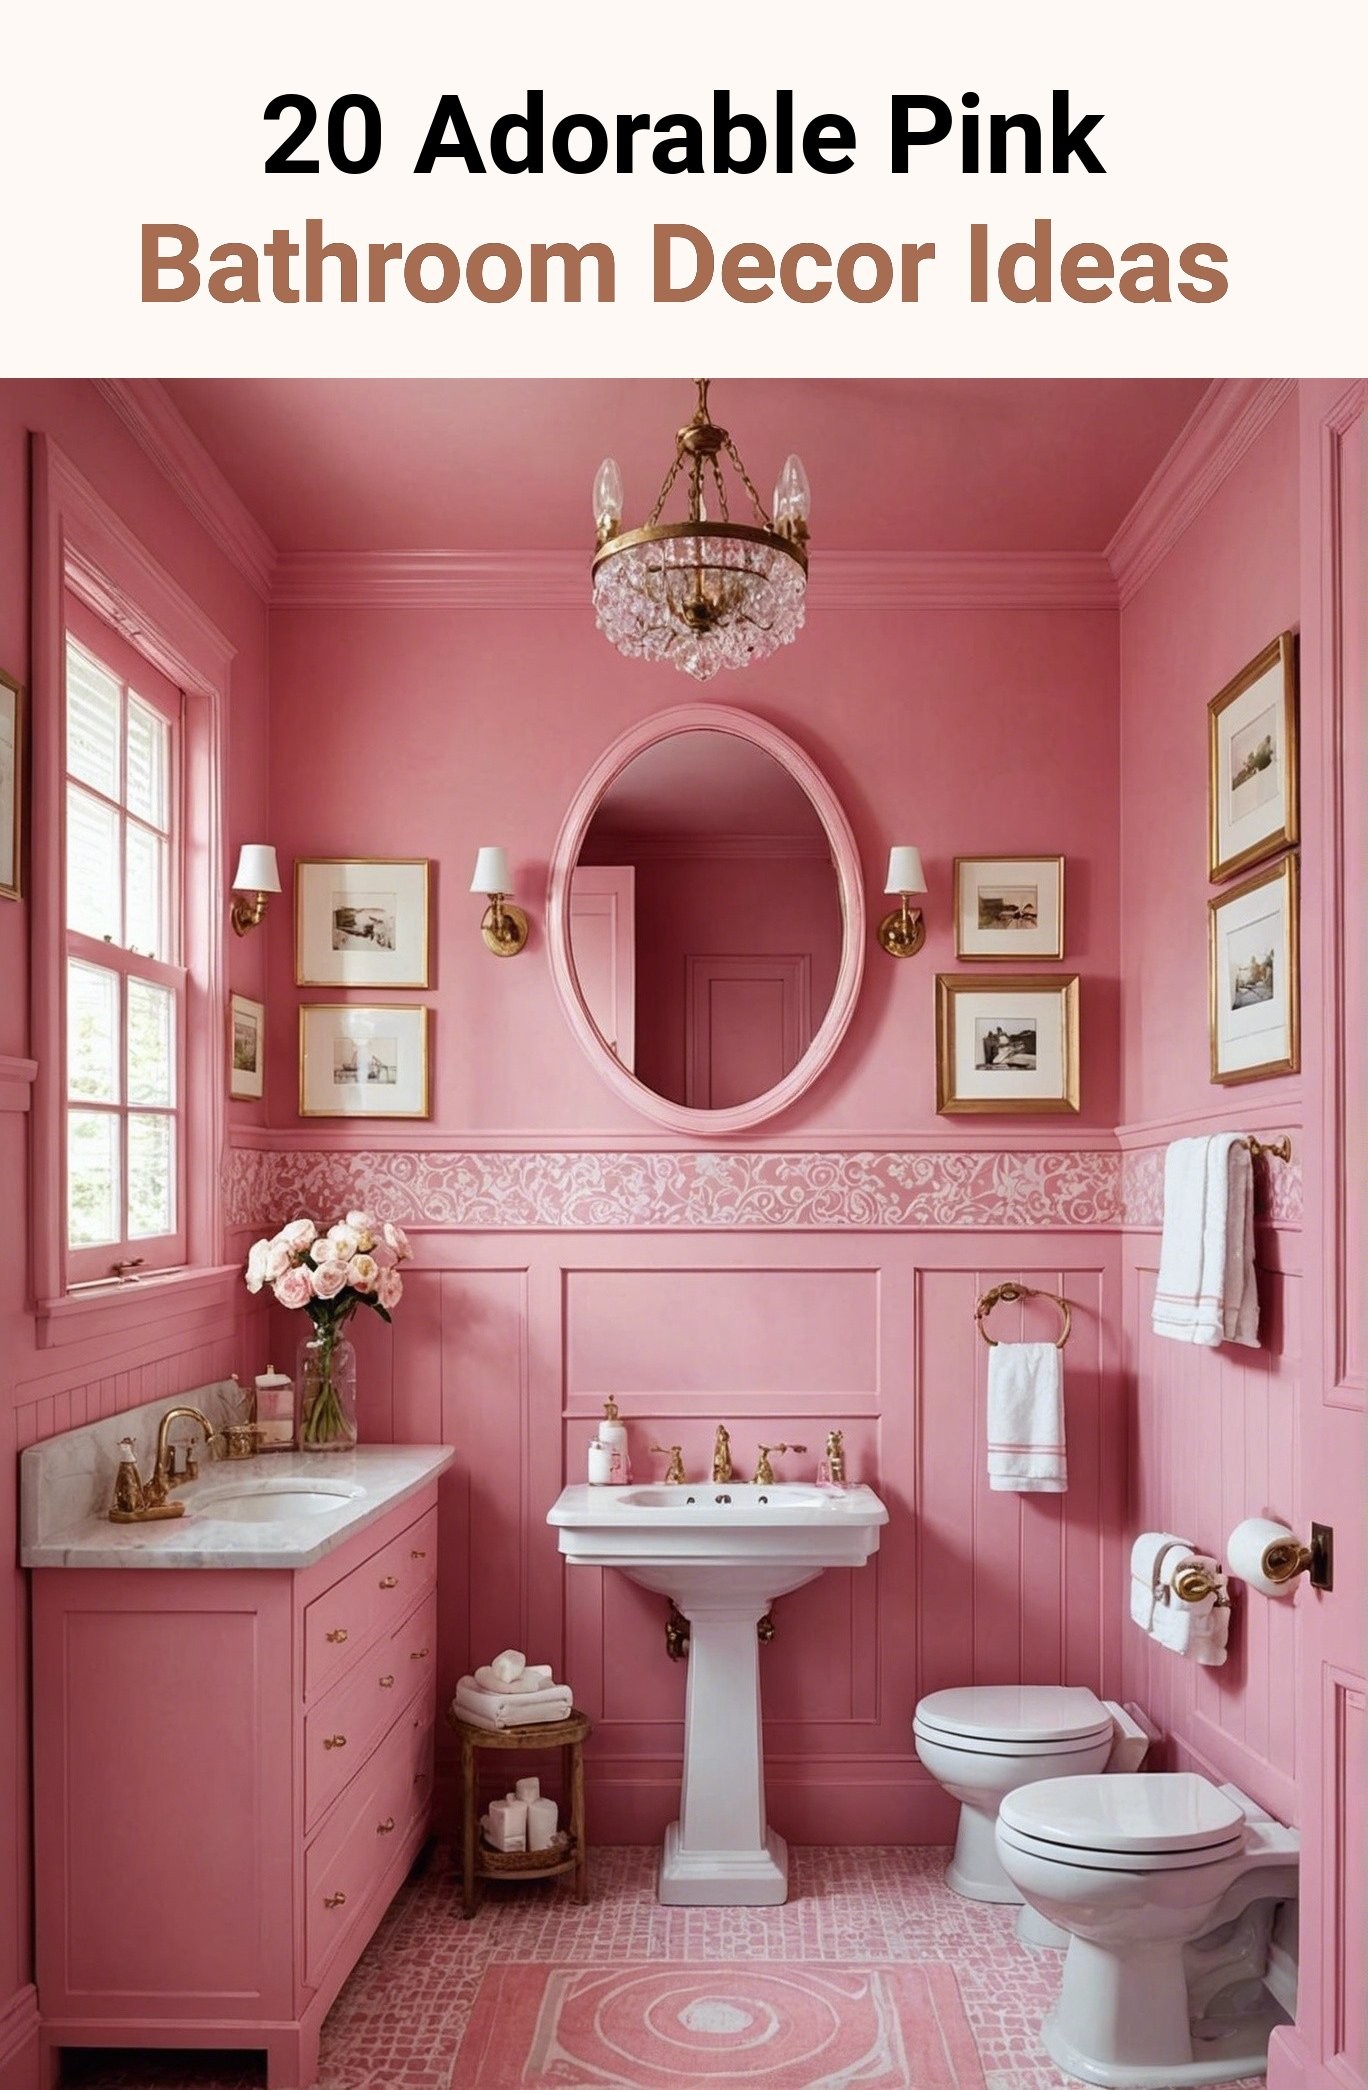 20 Adorable Pink Bathroom Decor Ideas